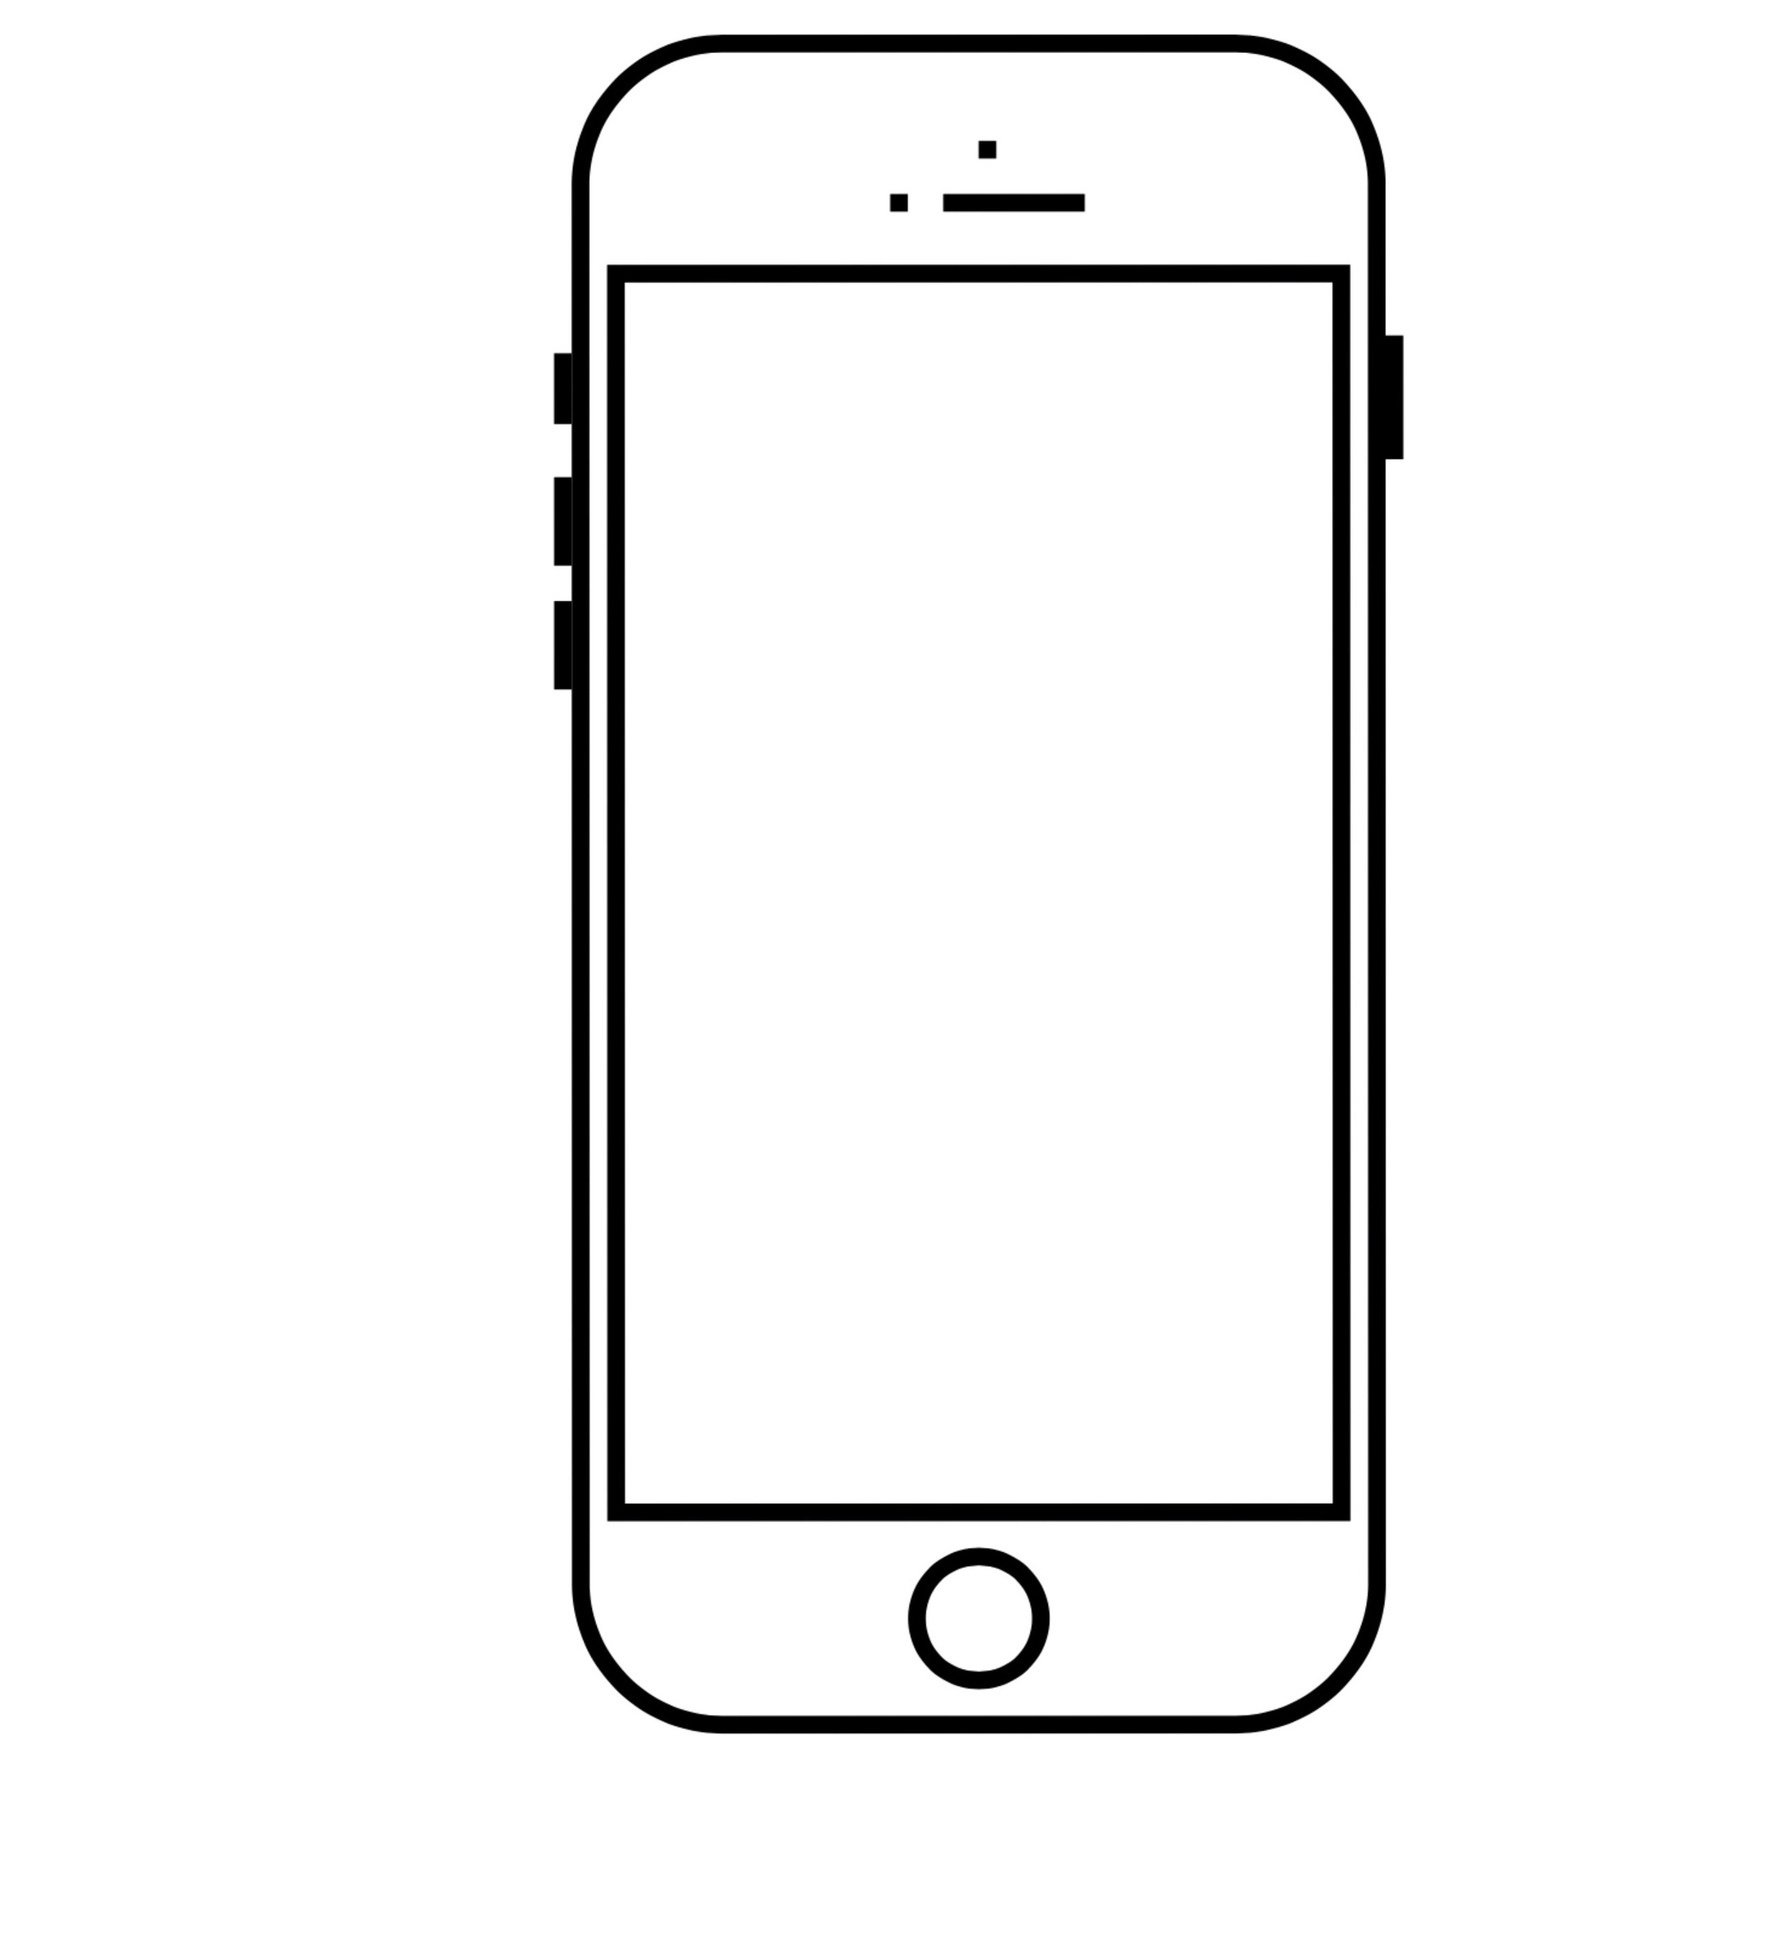 Мобильный телефон пнг рисунок